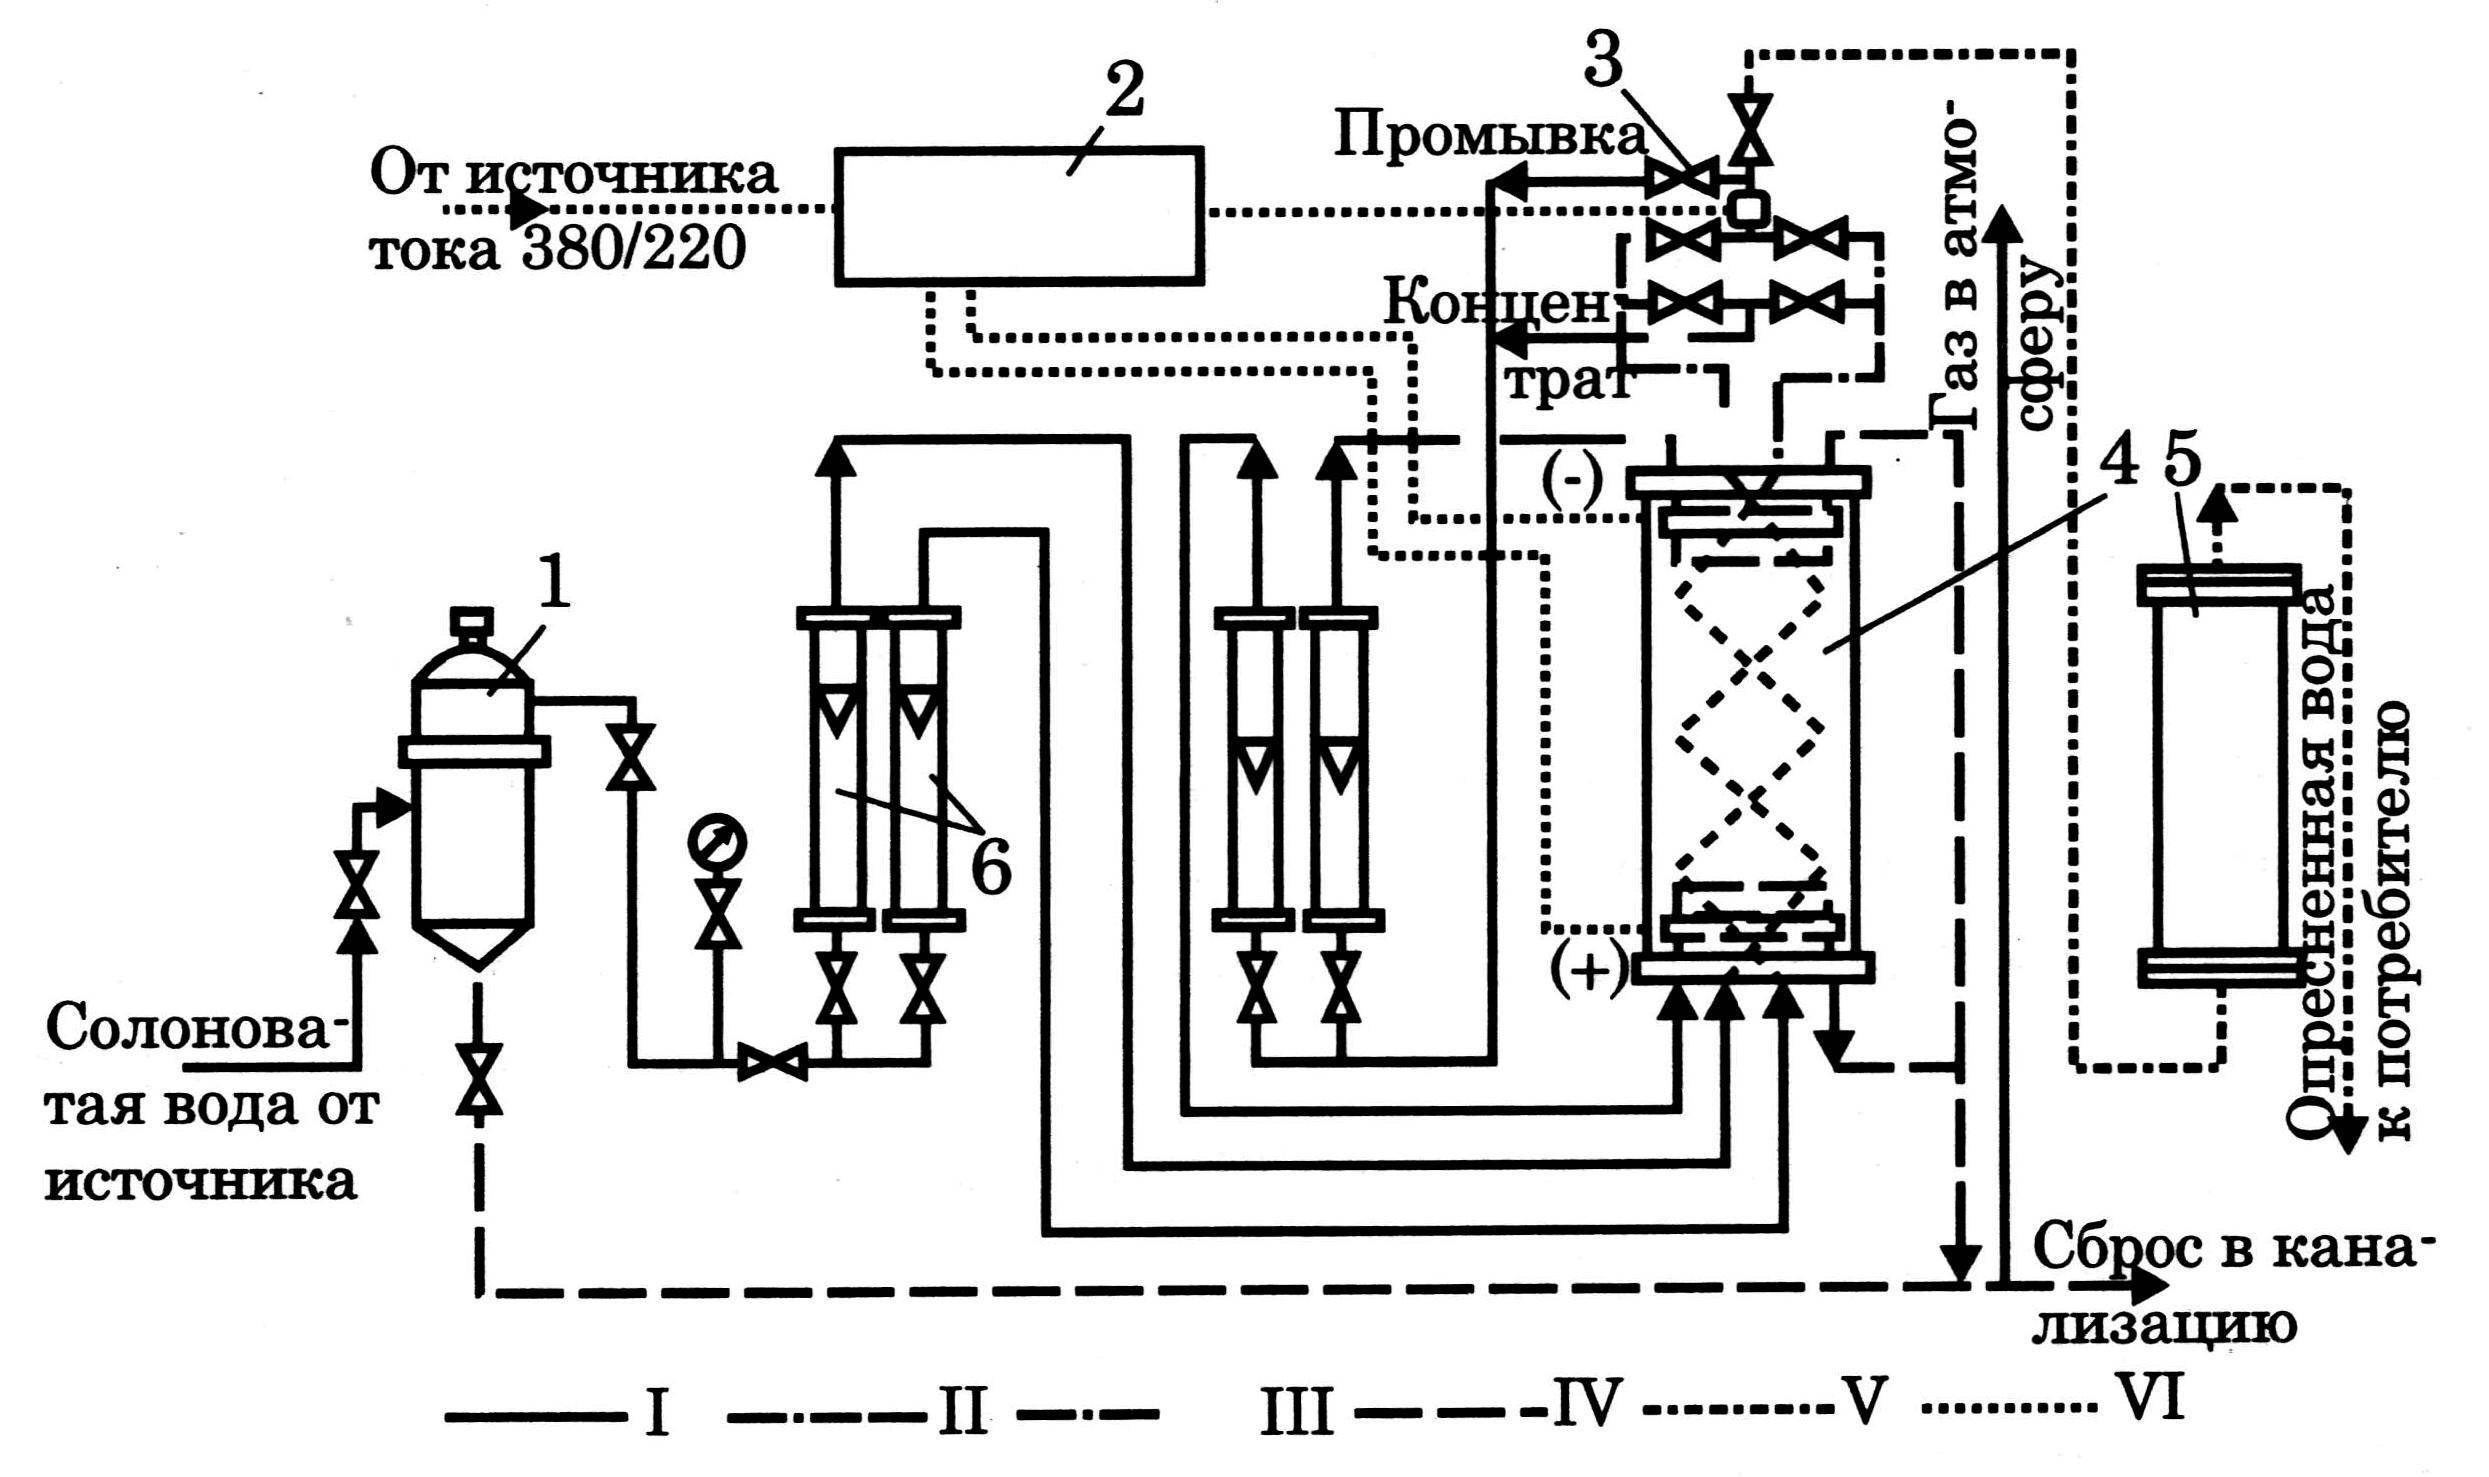 Способ минерализации питьевой воды из дистиллята - патент рф 2417953 - друзьяк николай григорьевич (ua)